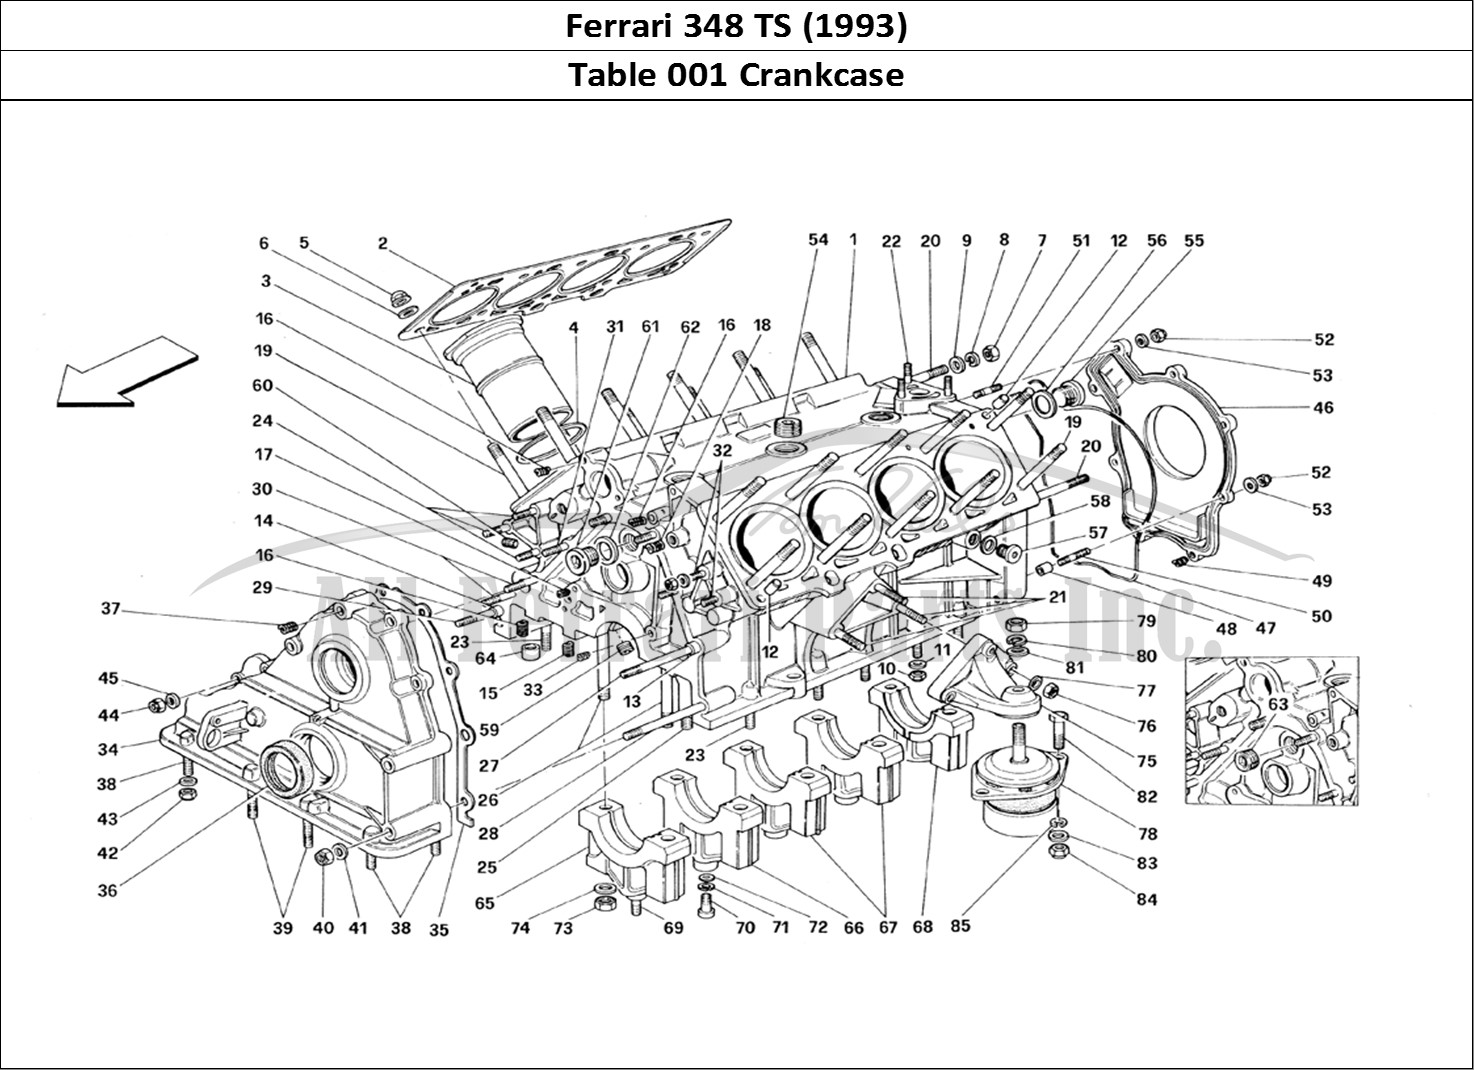 Ferrari Parts Ferrari 348 TB (1993) Page 001 Crankcase